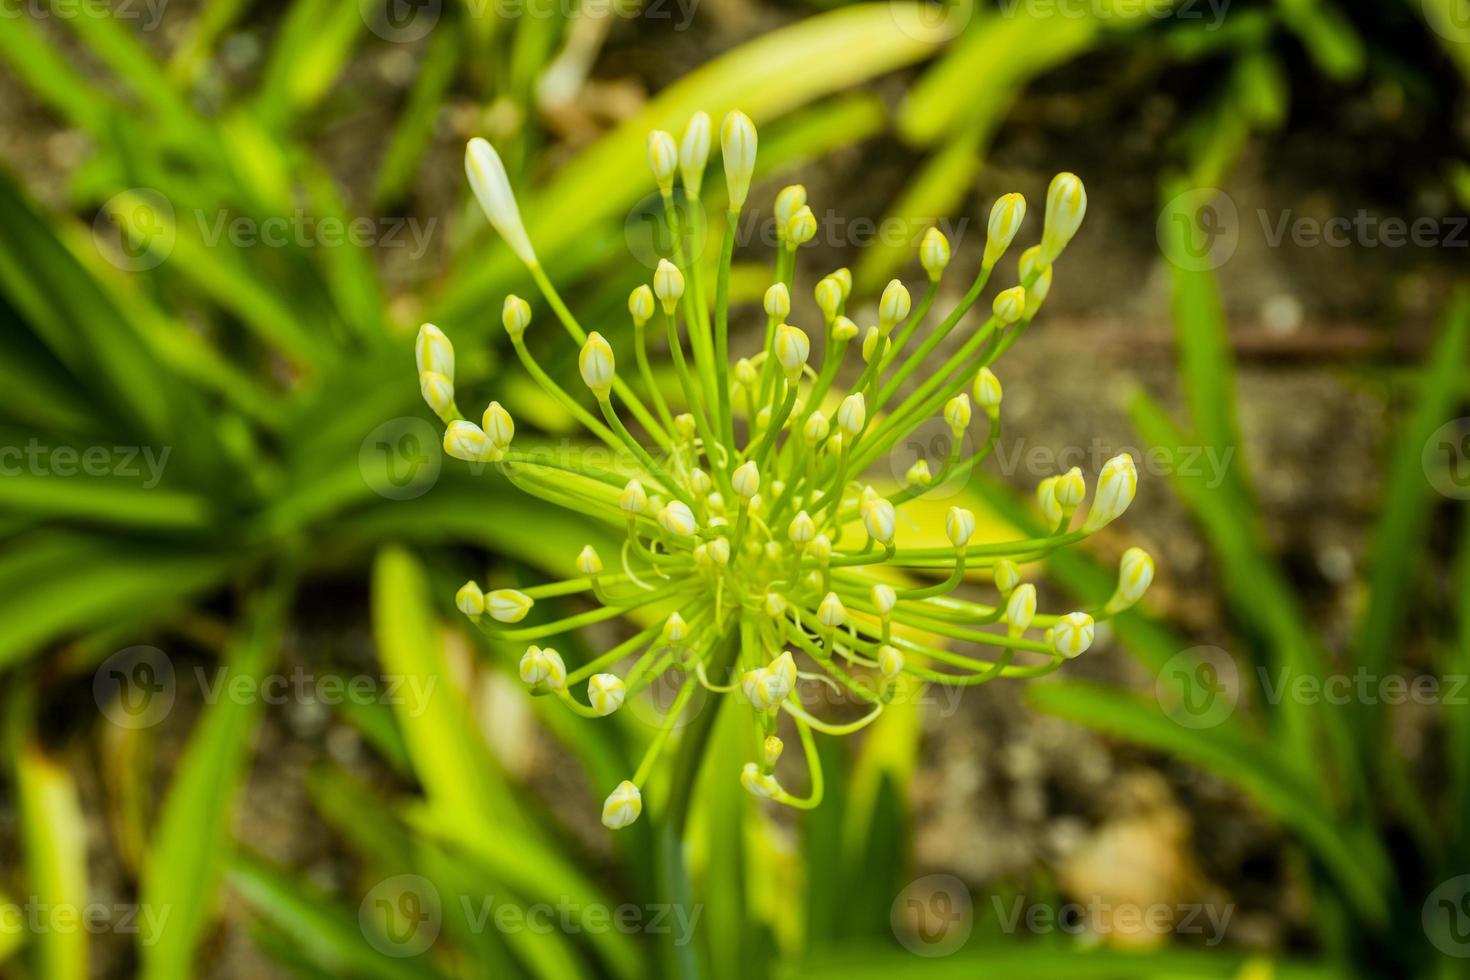 Yellow garlic allium flower photo